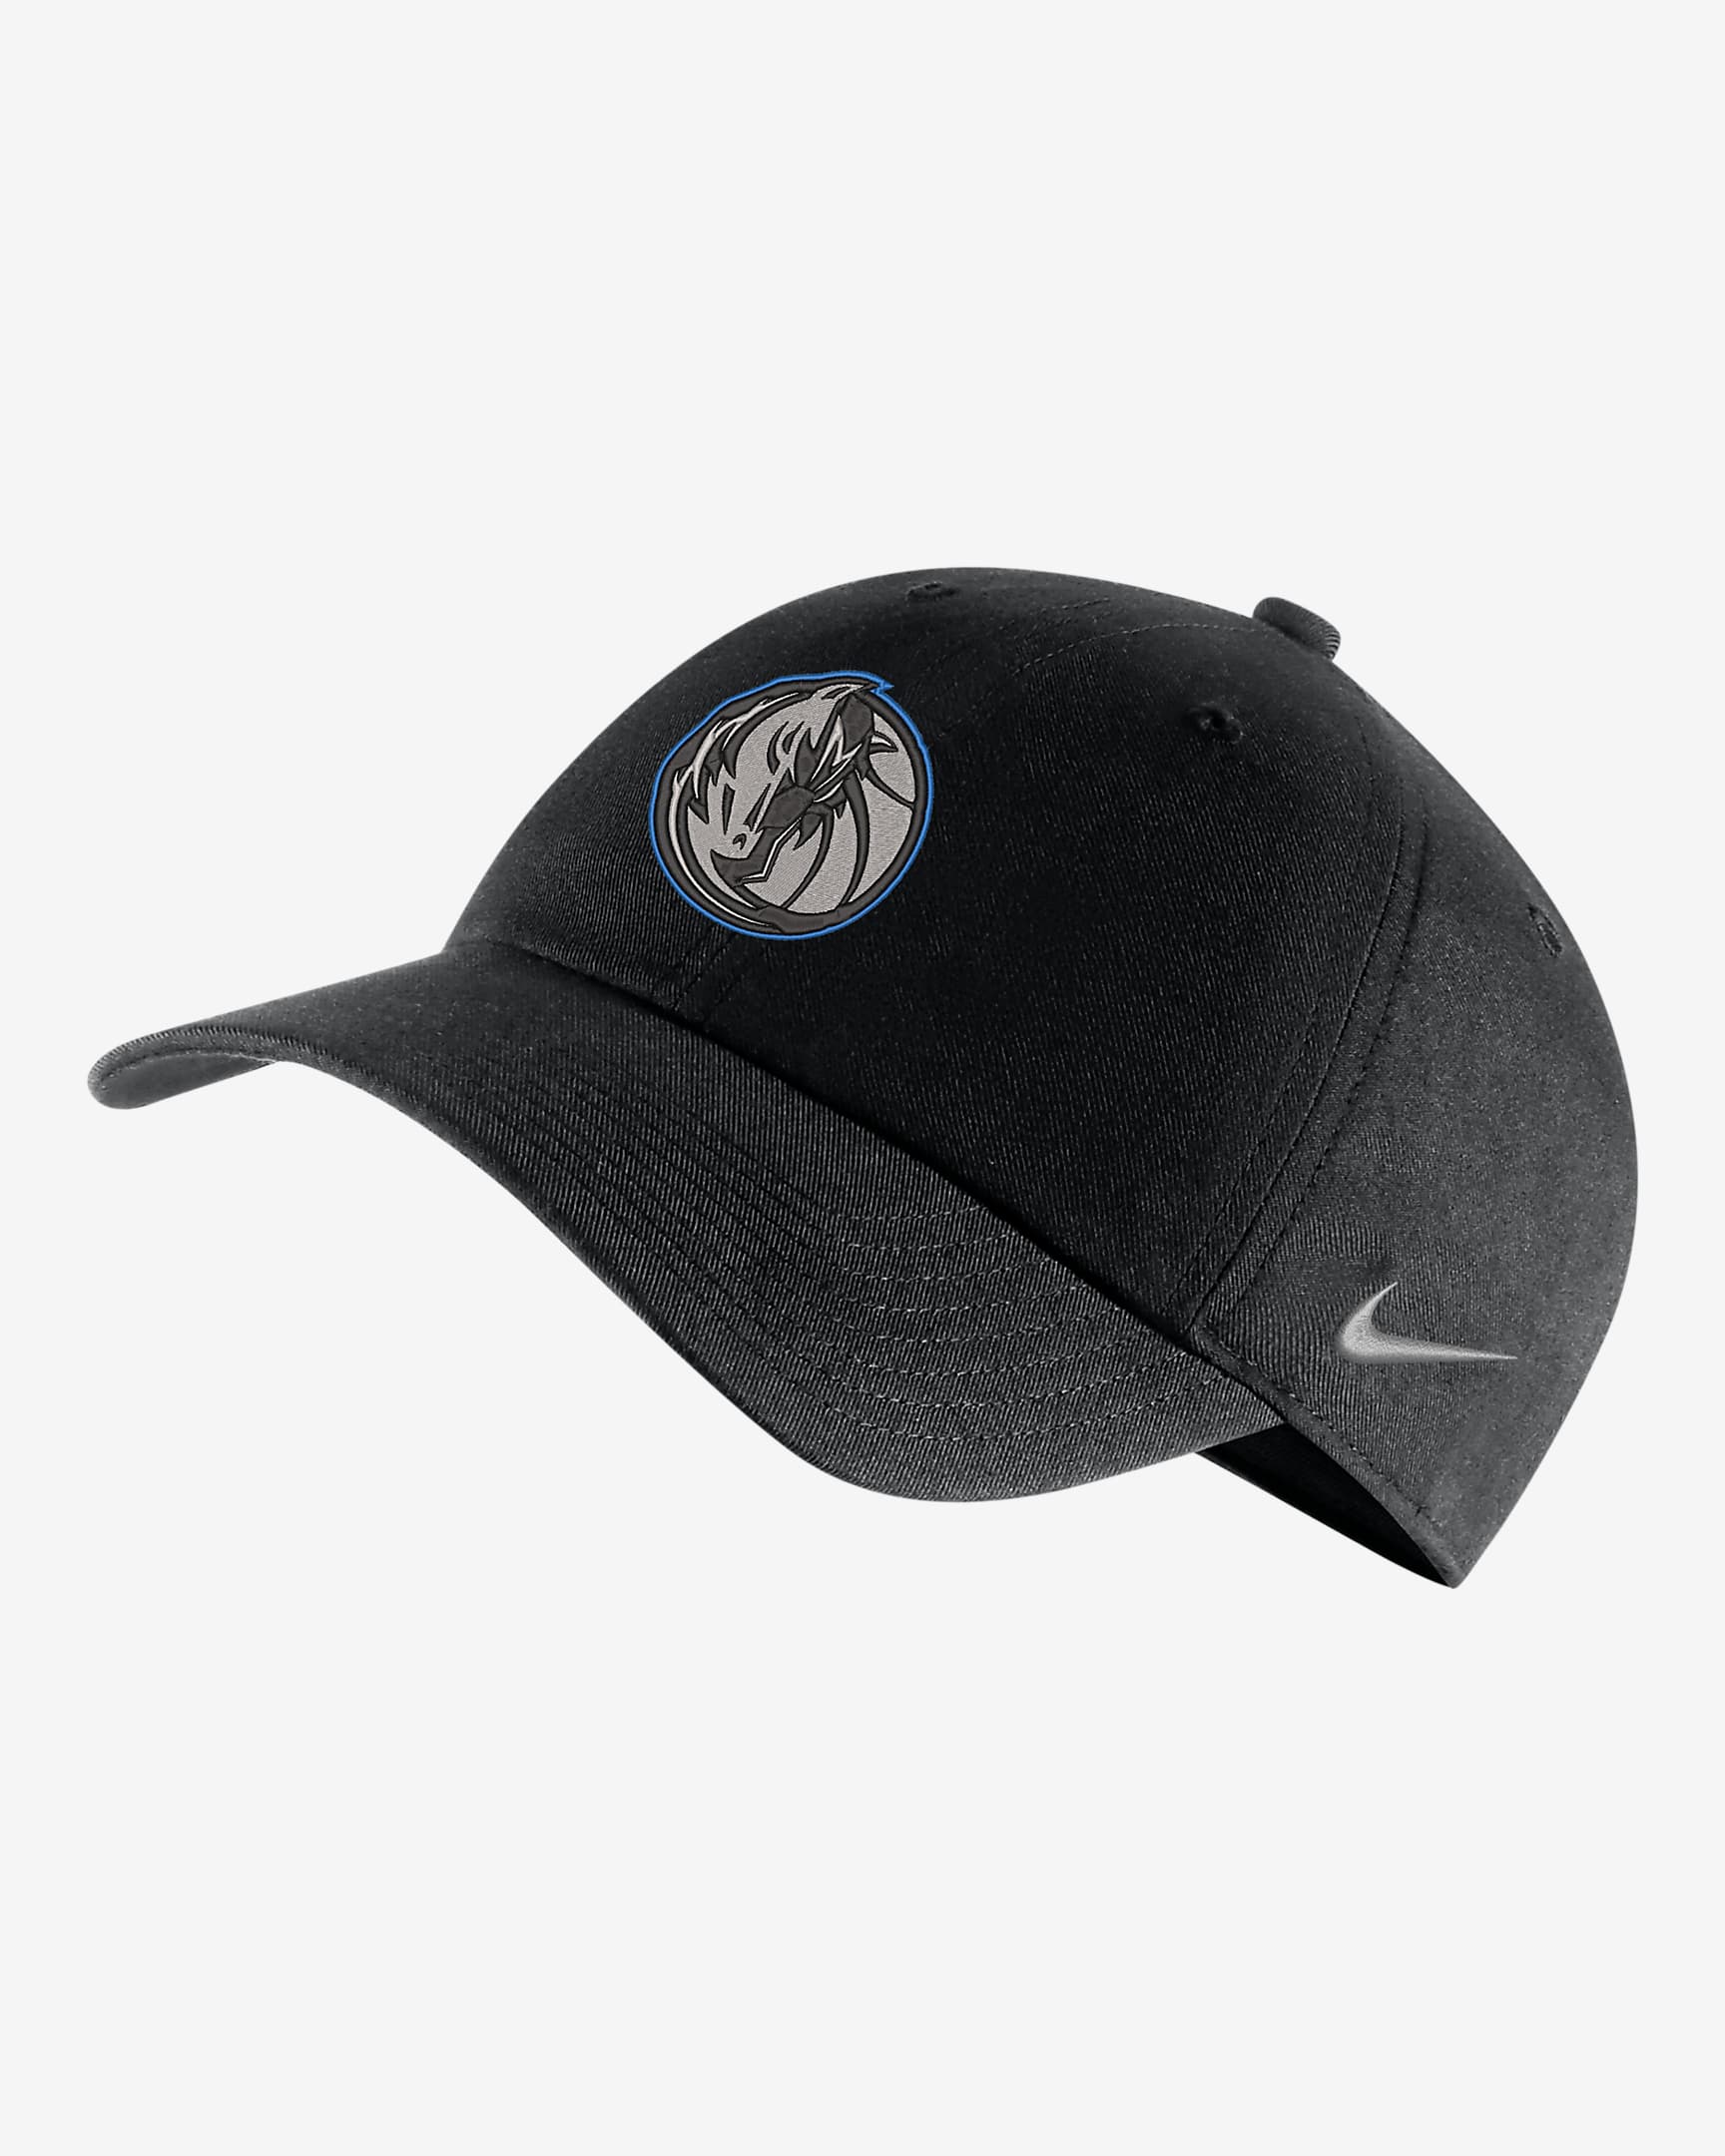 Gorra Nike de la NBA ajustable Dallas Mavericks City Edition. Nike.com